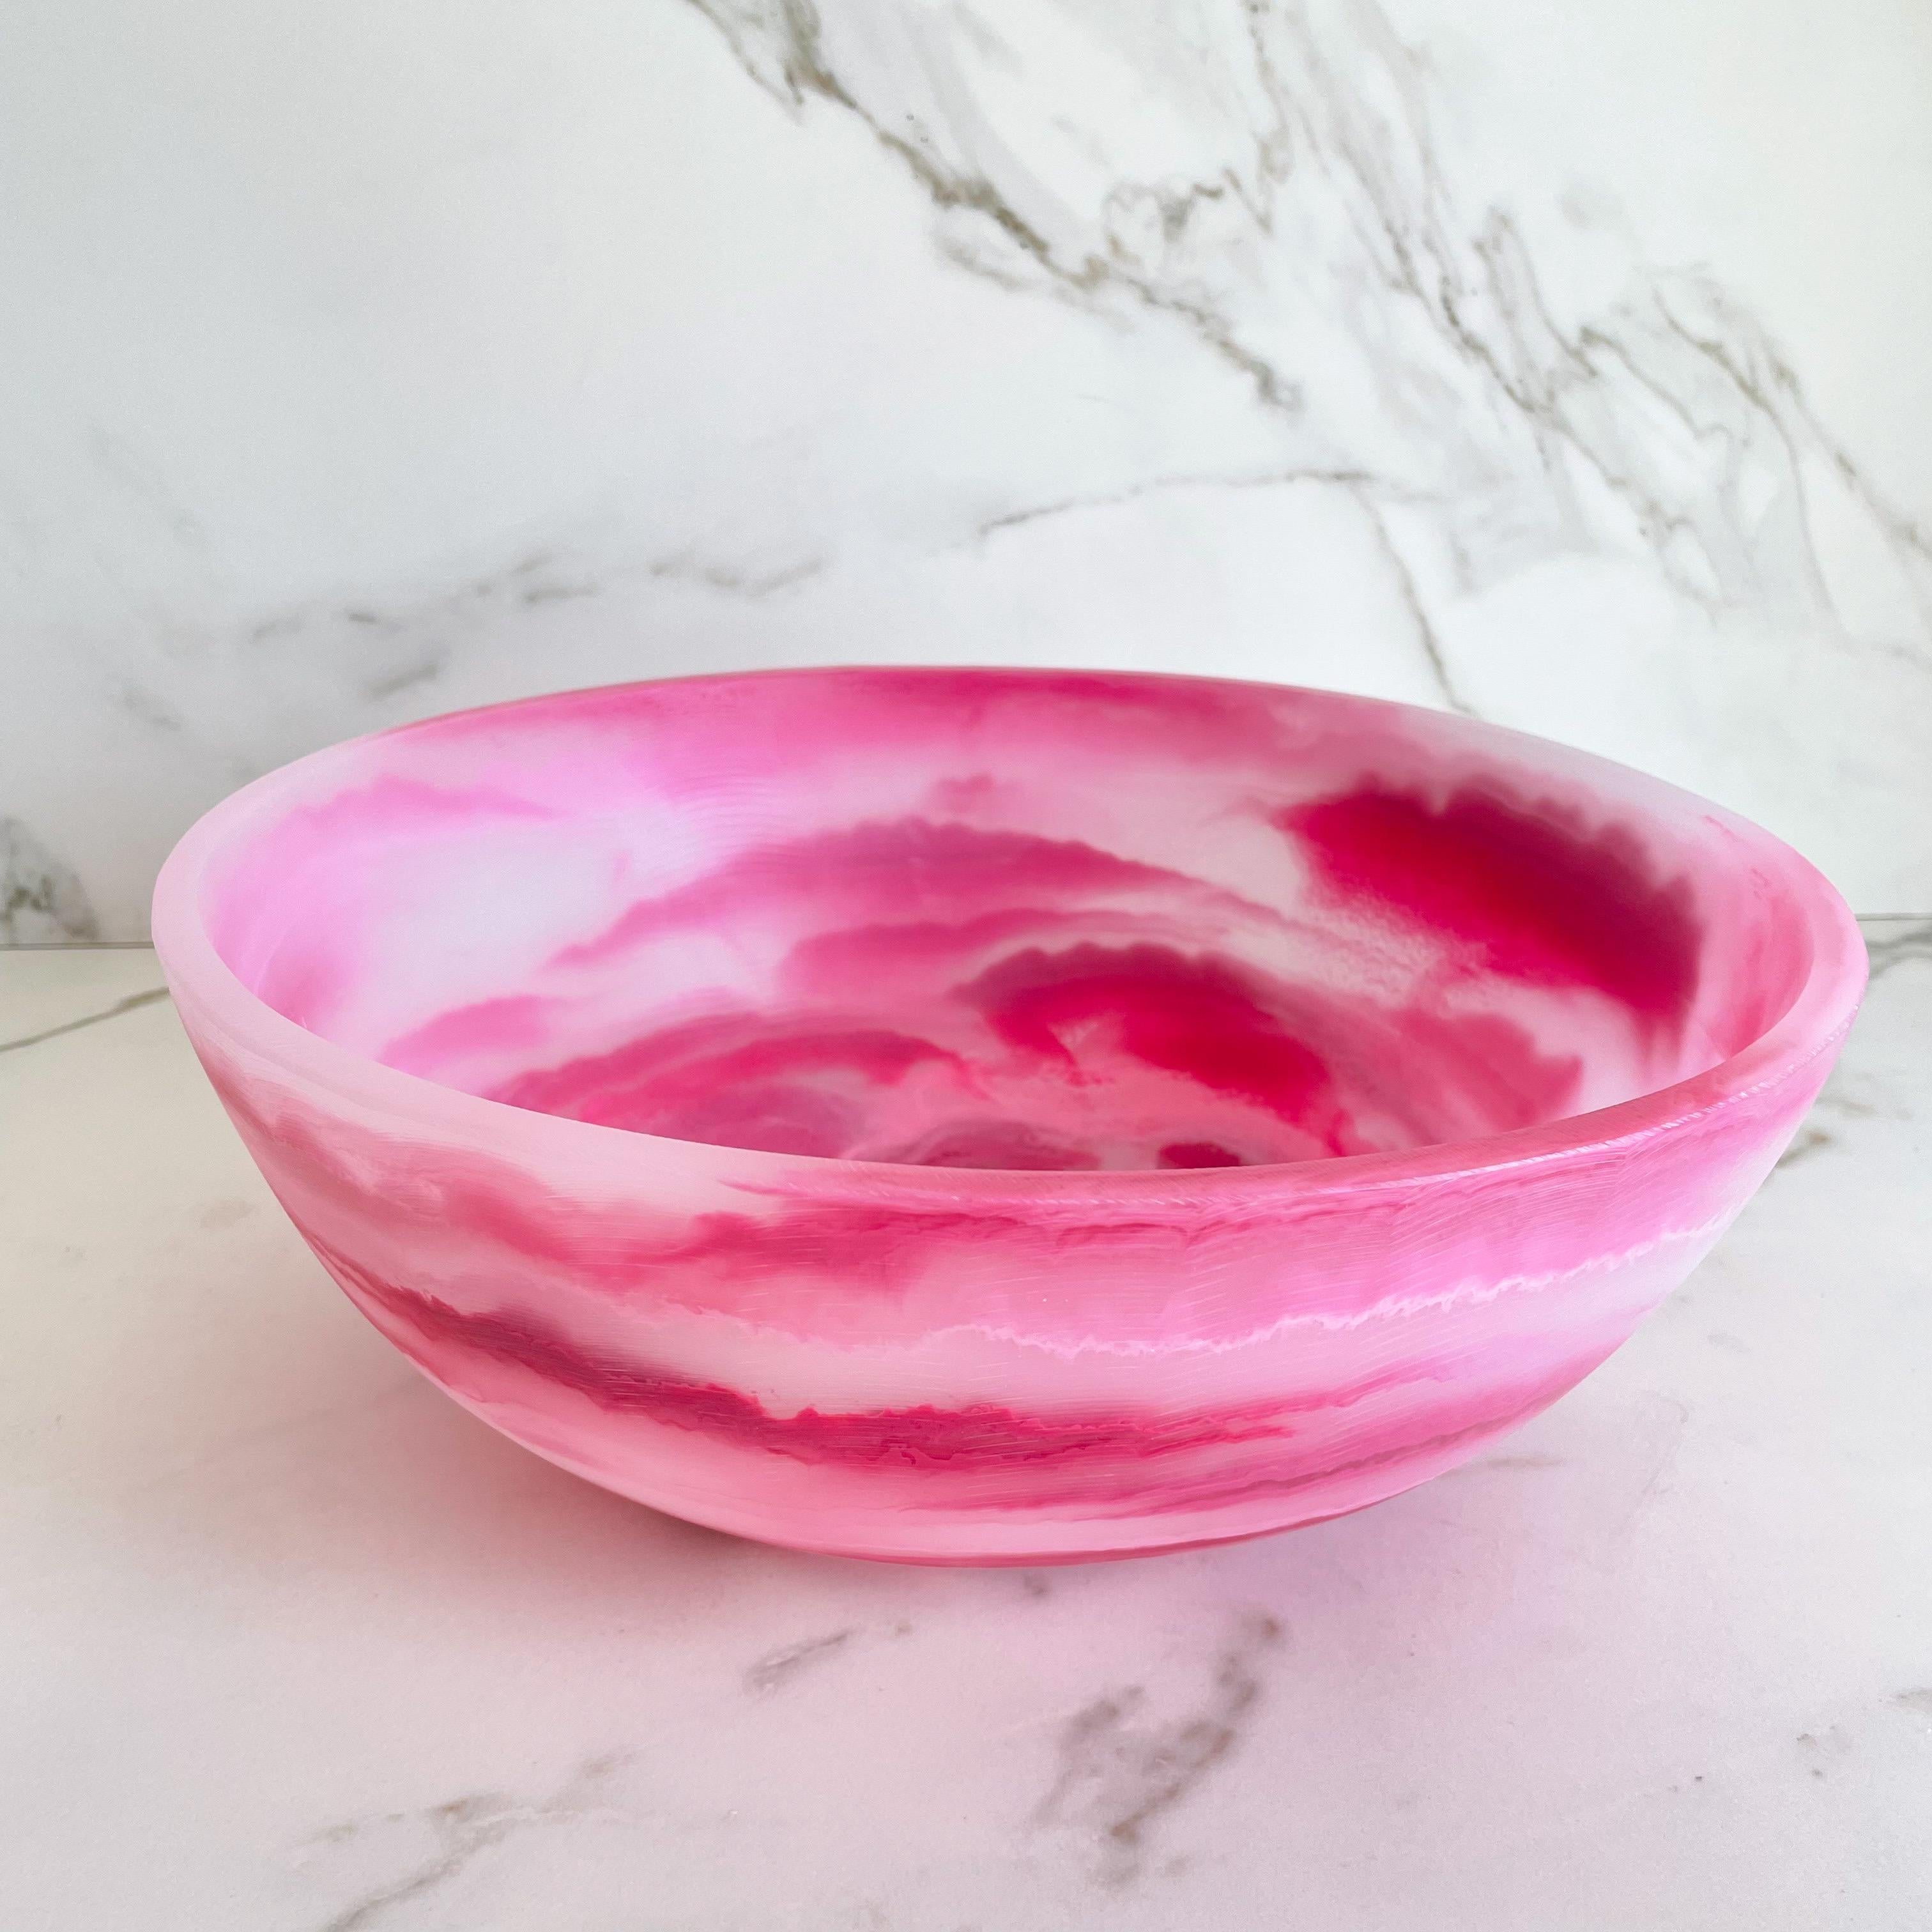 Notre bol coloré est fabriqué à la main en résine blanche traslucide avec une texture marbrée en rose et rose clair. Son design amusant et coloré en fait une pièce de choix et peut être utilisé comme décoration, plateau de fruits ou pour servir des